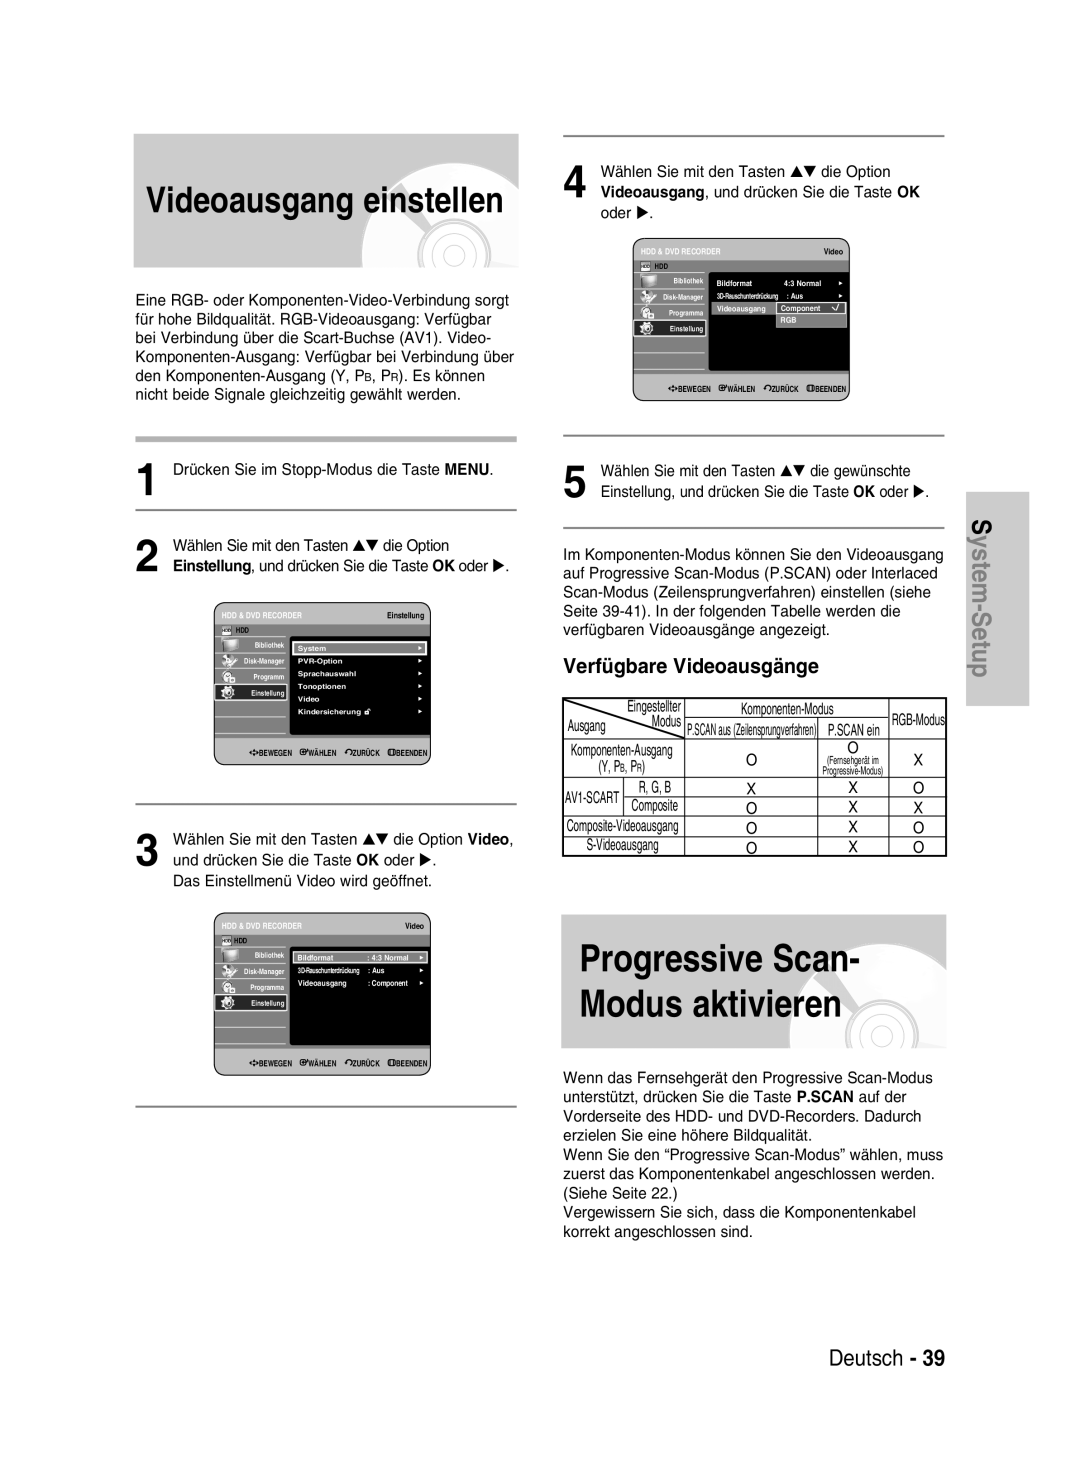 Samsung DVD-HR730/XEG, DVD-HR730/XEC Progressive Scan Modus aktivieren, Videoausgang einstellen, Deutsch, S -ystemSetup 